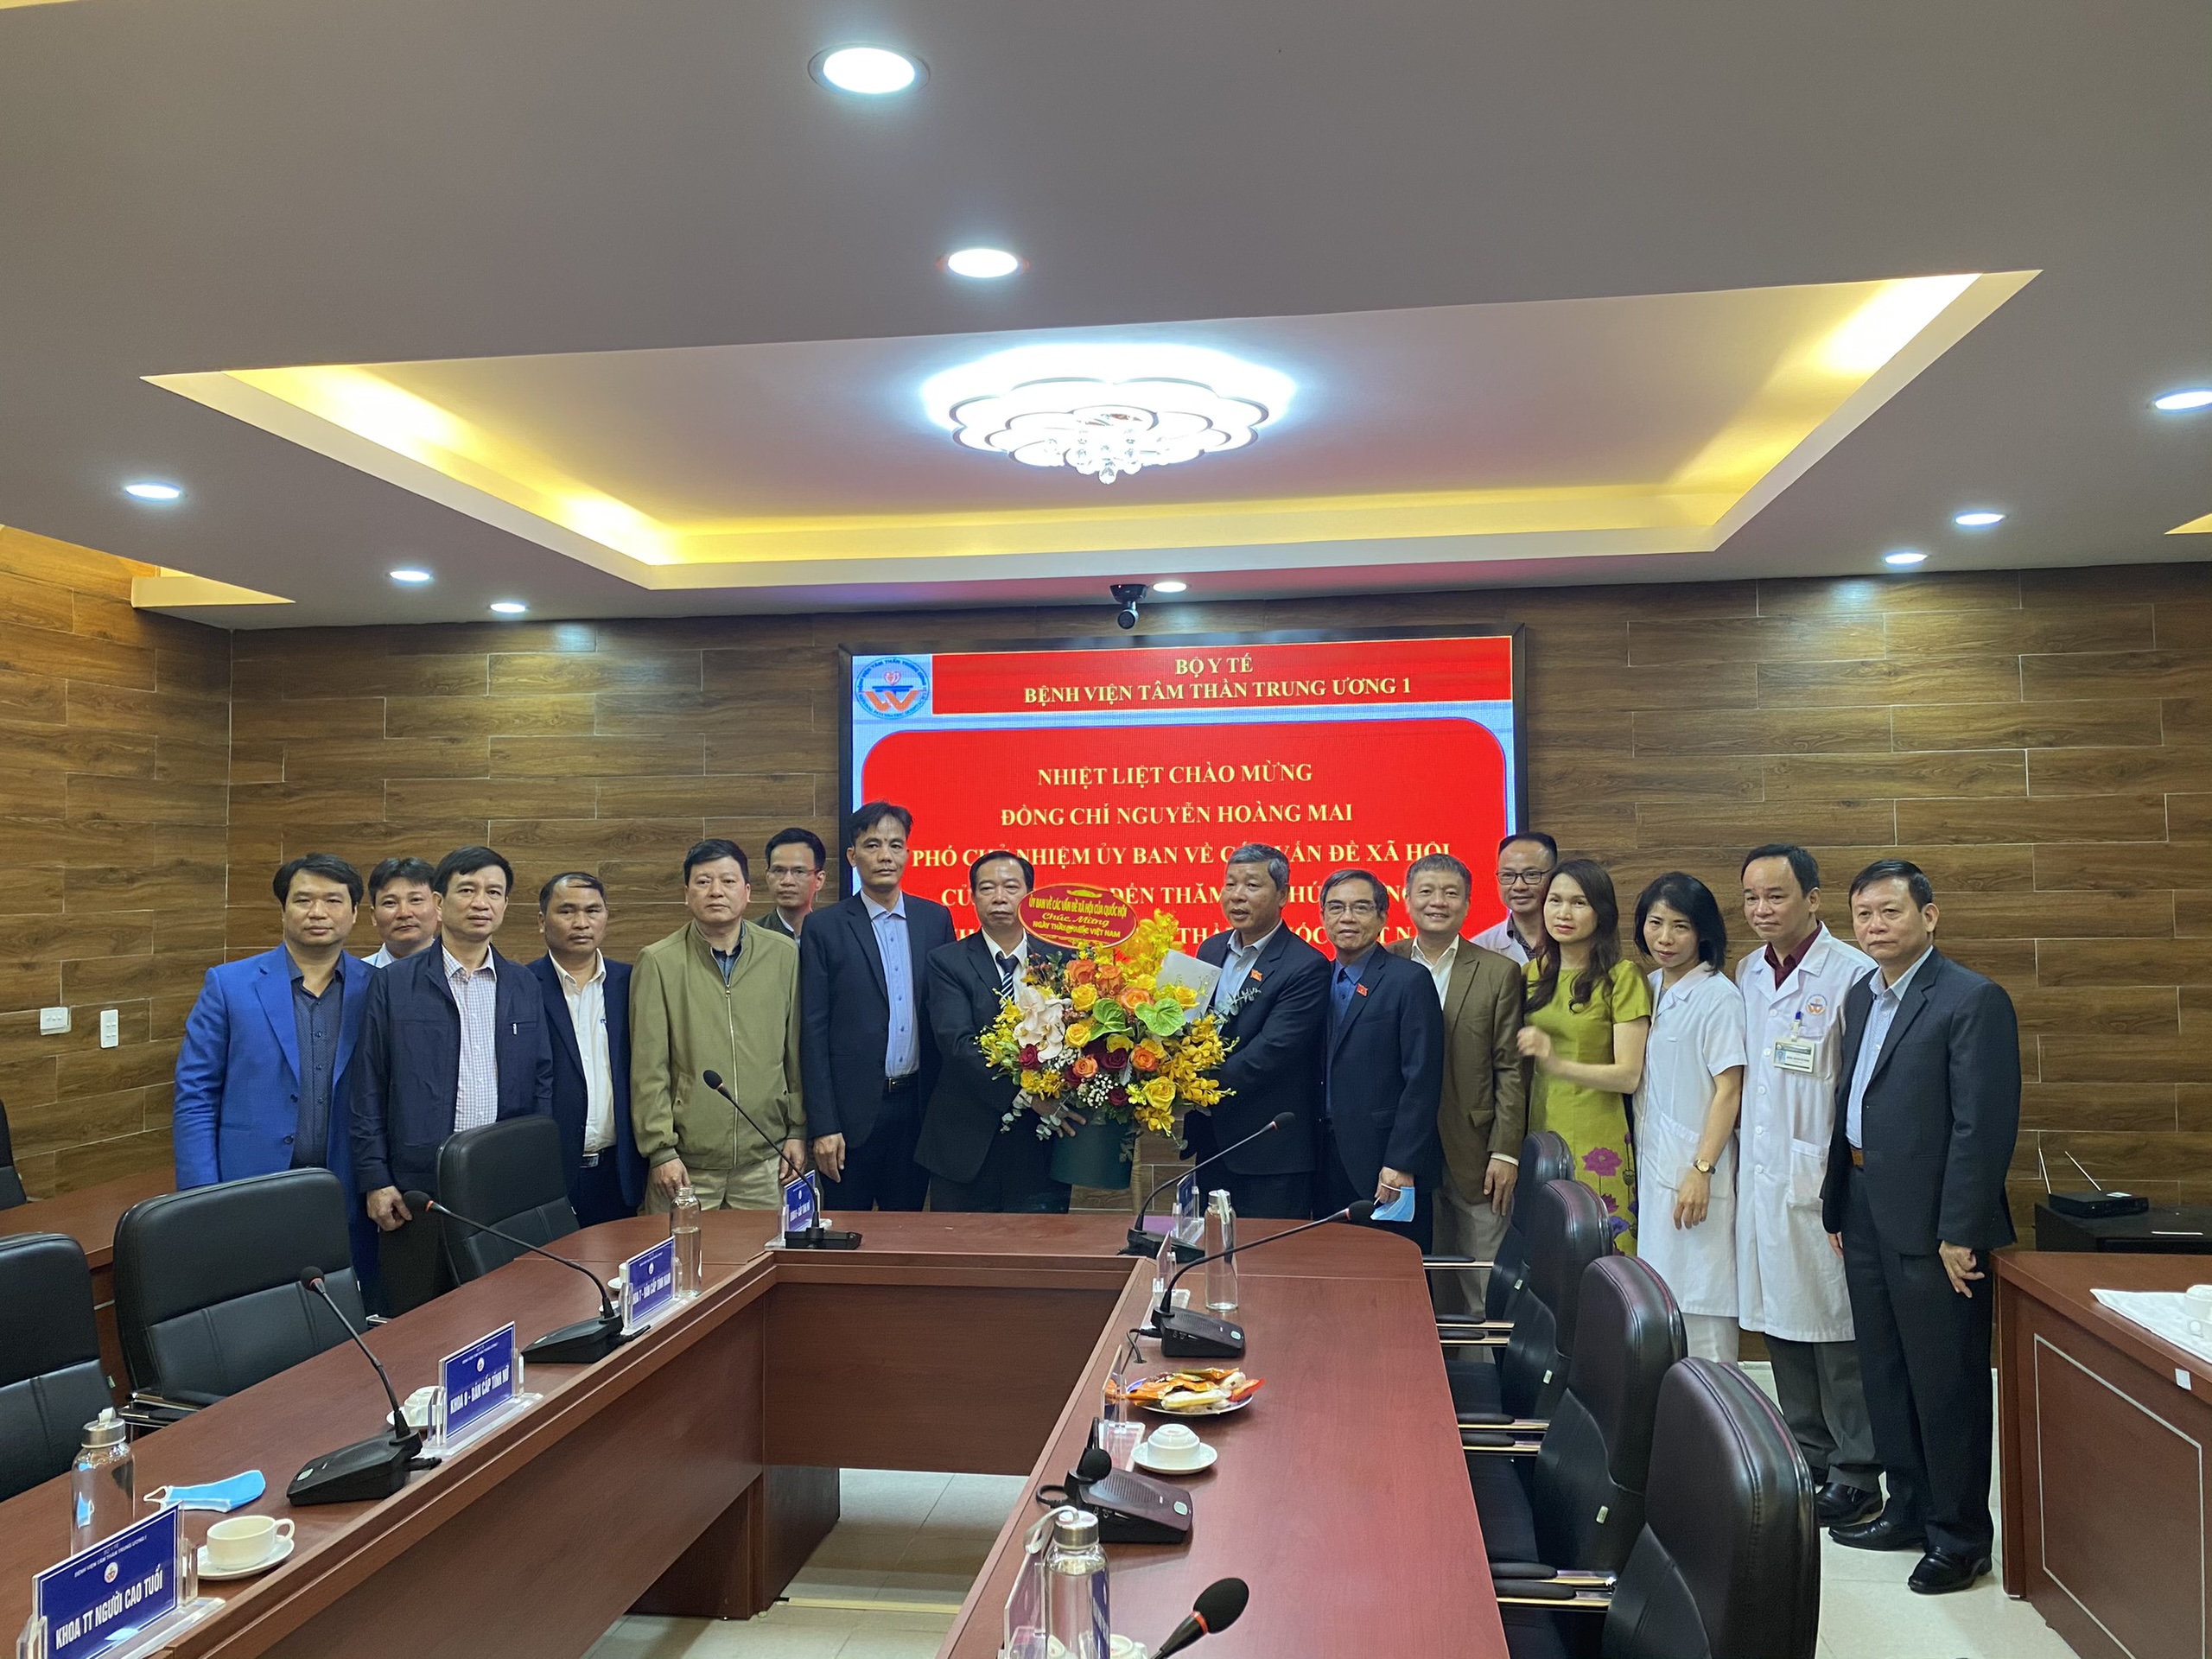 Phó Chủ nhiệm Ủy ban Về các vấn đề xã hội Nguyễn Hoàng Mai thăm và chúc mừng Bệnh viện Tâm thần Trung ương